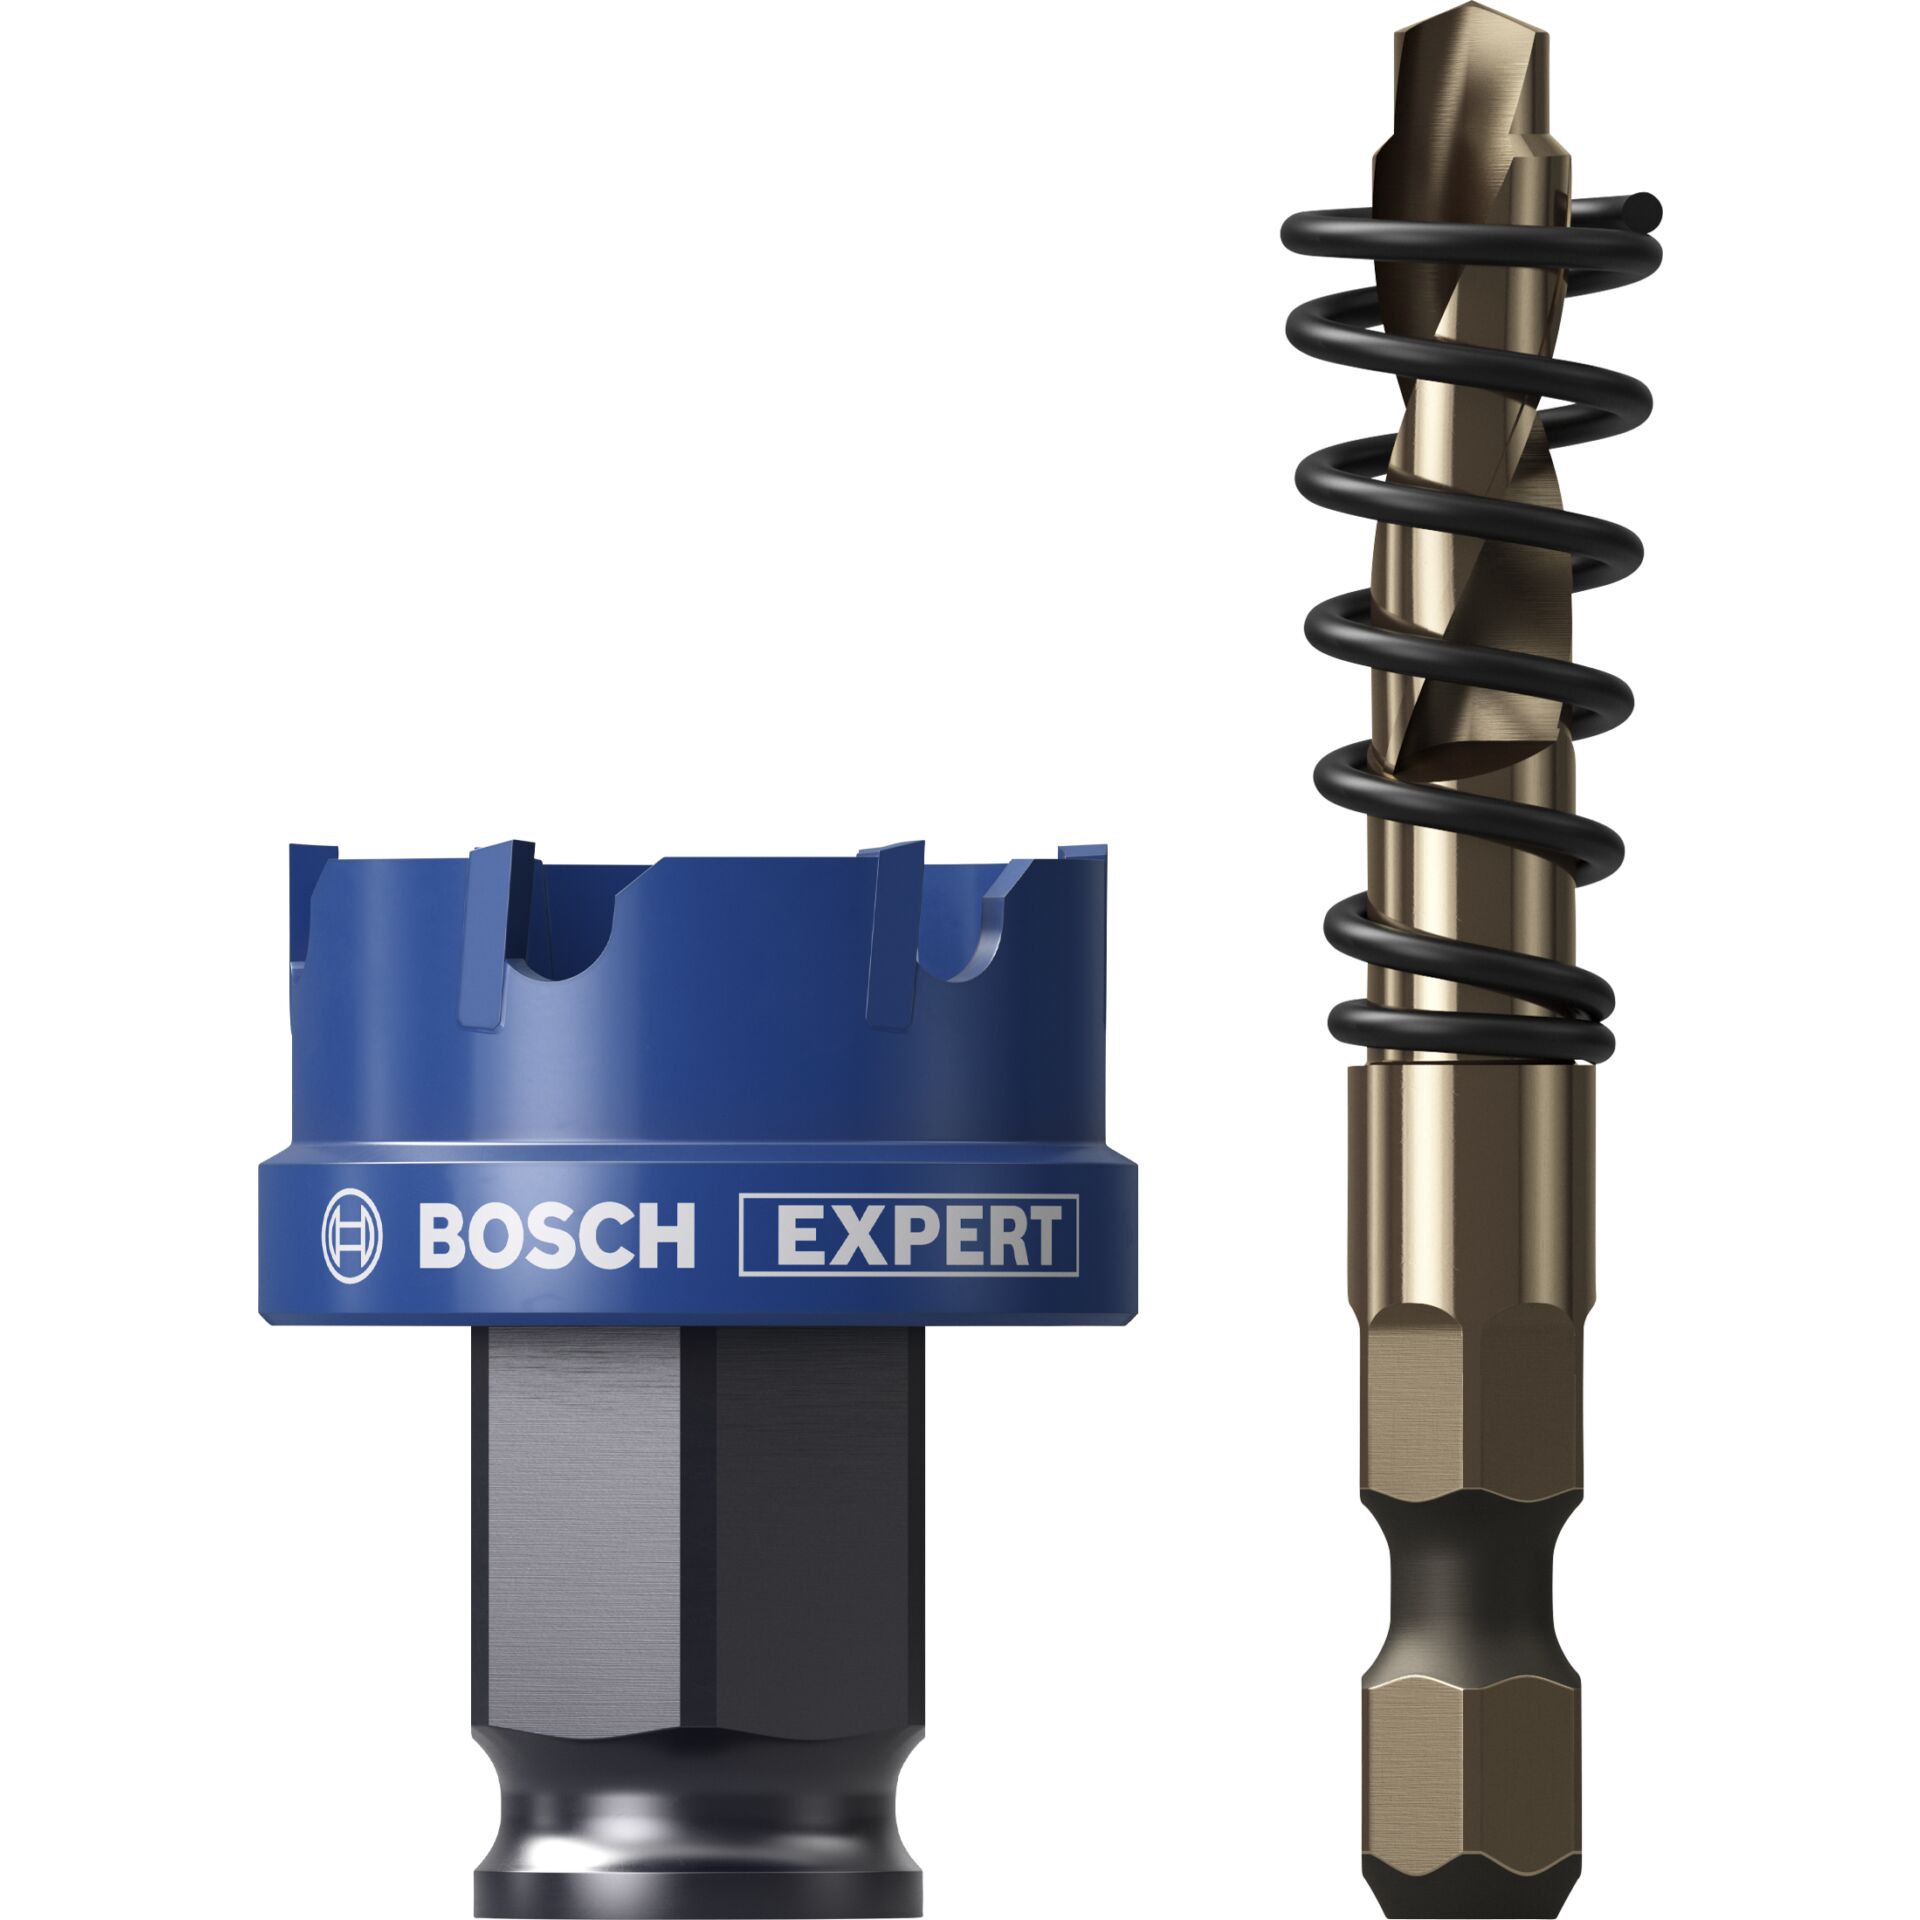 Bosch EXPERT Lochsäge Carbide SheetMetal 30mm